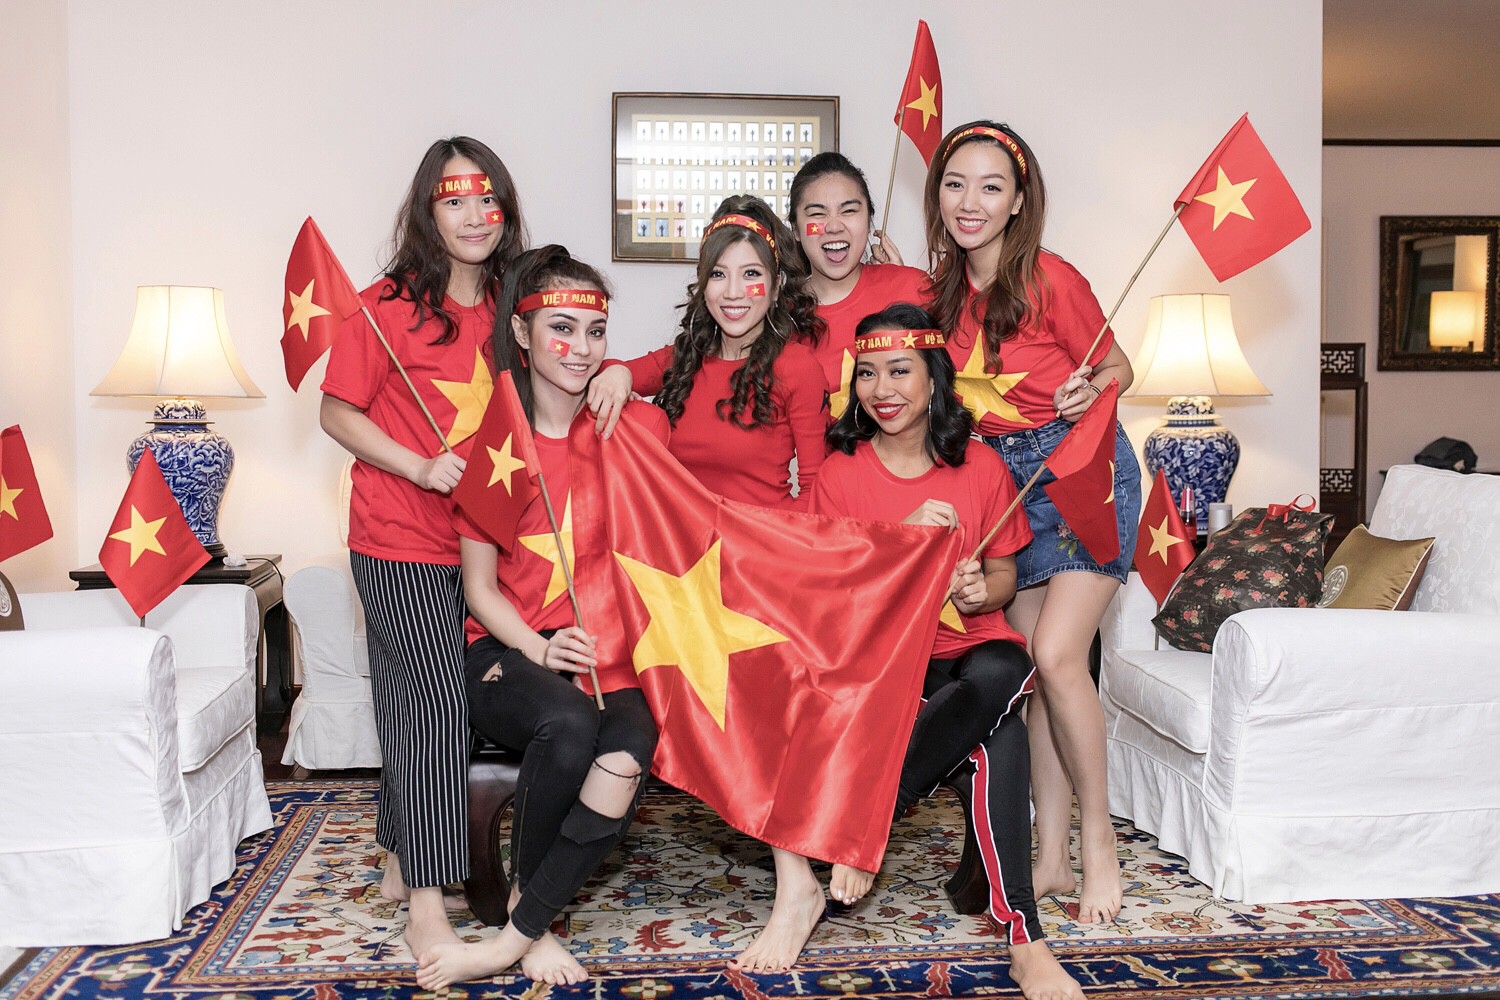 Cuồng nhiệt như Trang Pháp: Tổ chức sinh nhật kết hợp cổ vũ U23 Việt Nam - Ảnh 7.